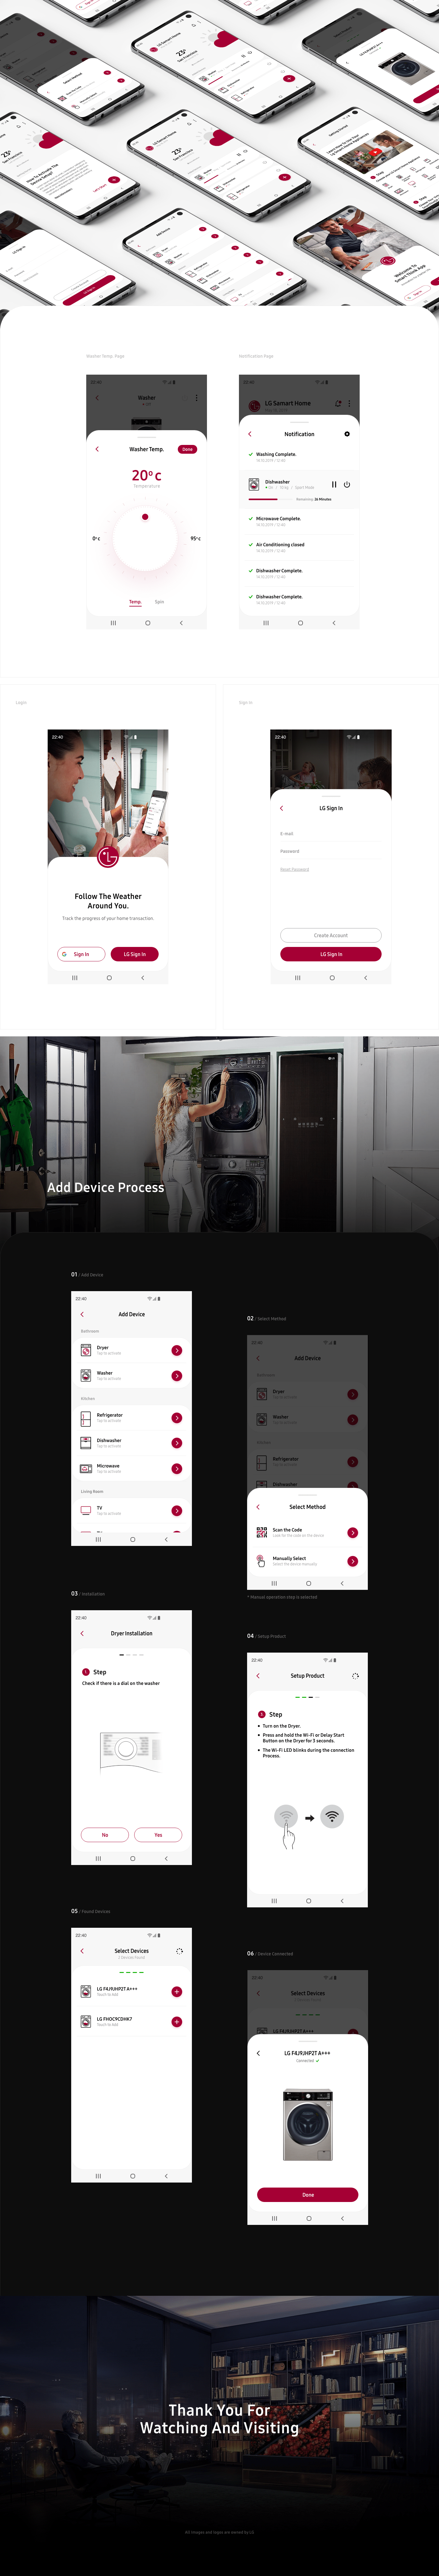 lg redesign app android ux UI smart app Samart Smart Home